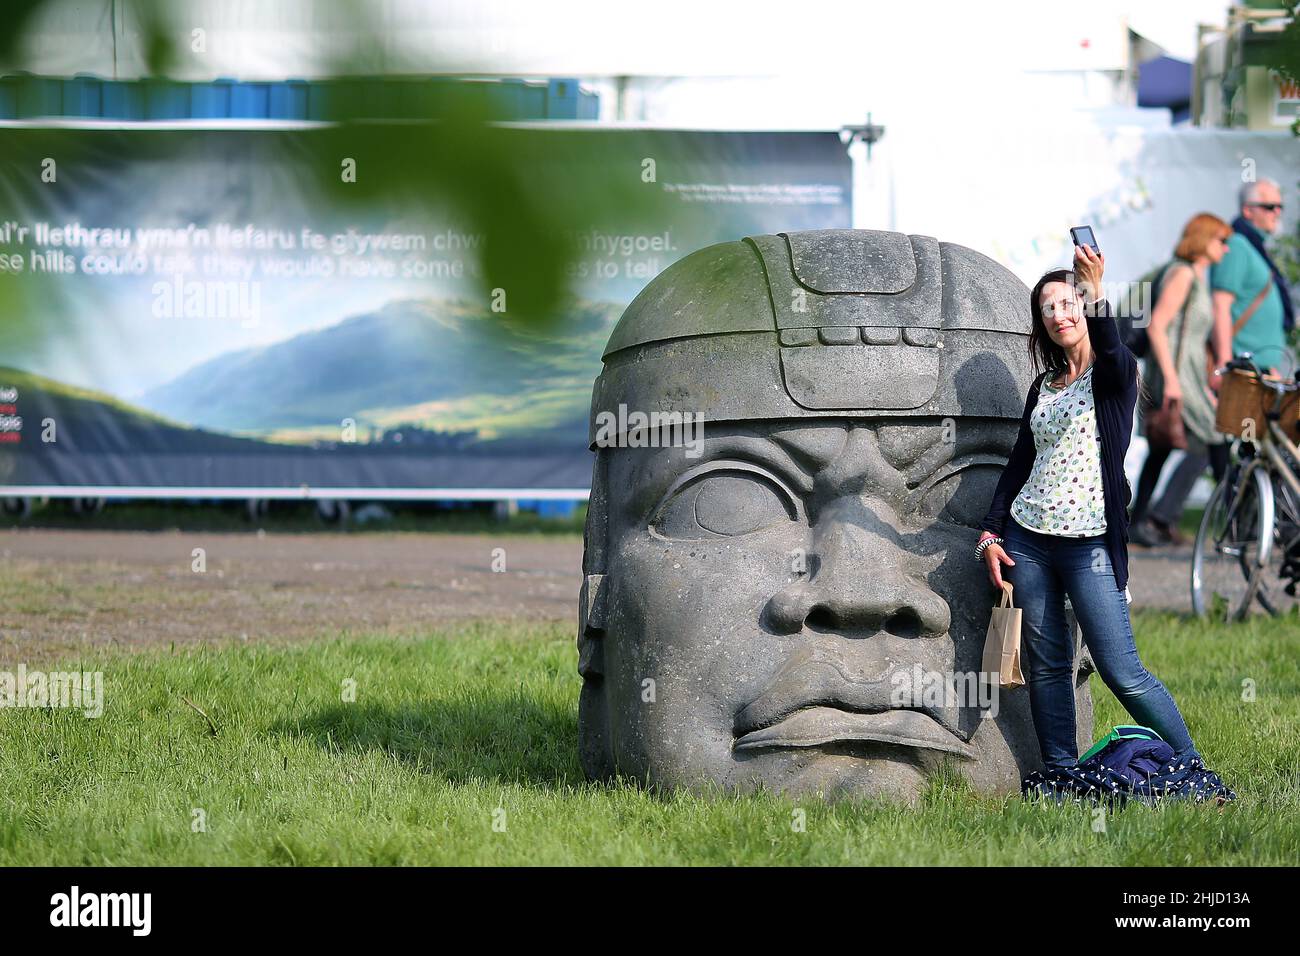 Hay Festival, une dame prend un selfie avec une immense sculpture d'un raed mexicain, à Hay-on-Wye, Powys, pays de Galles, le 26th mai 2018. Banque D'Images